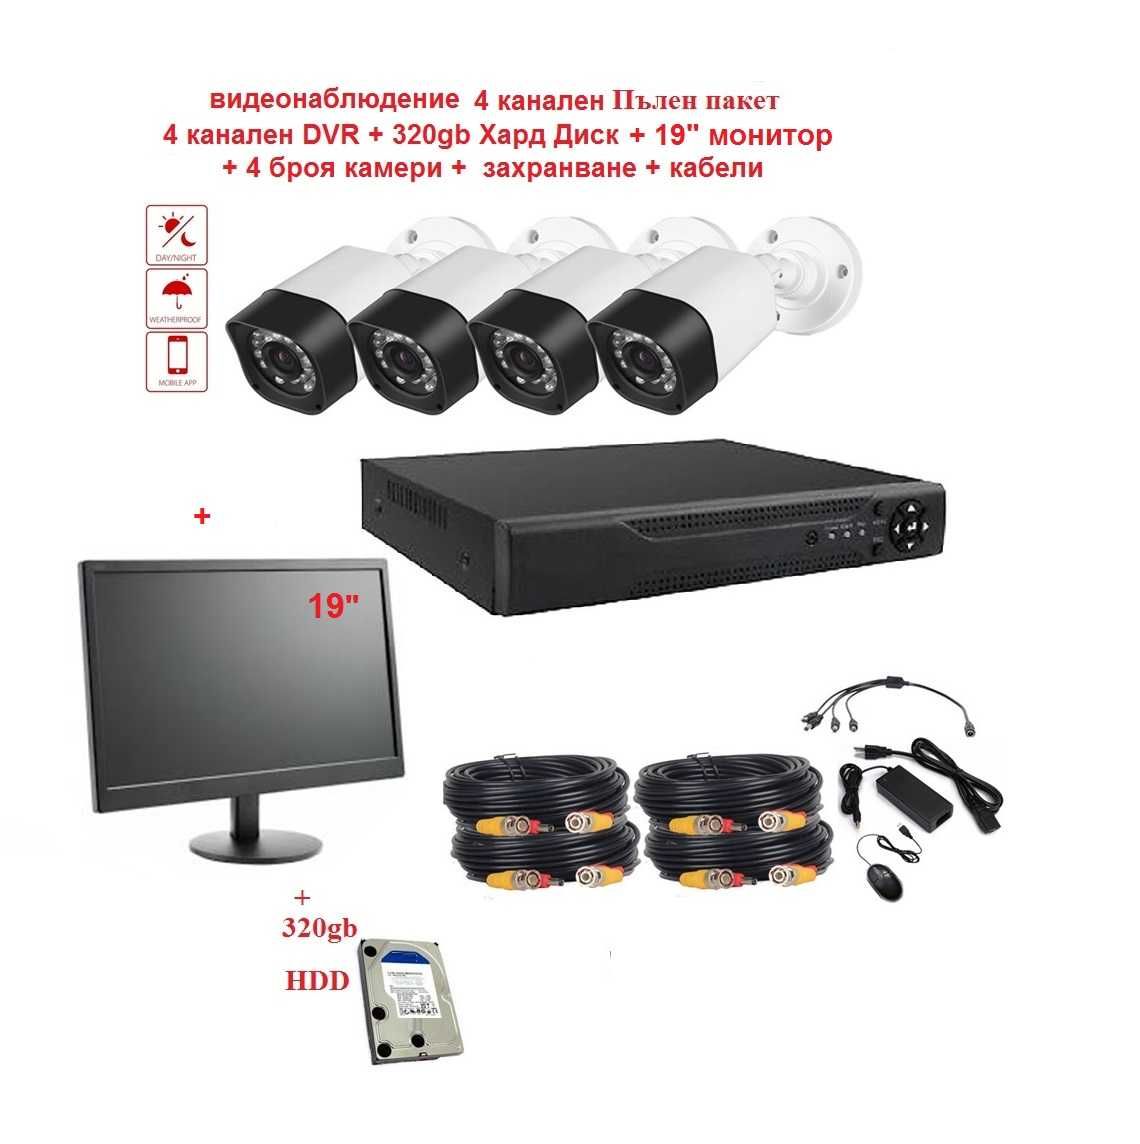 Пълно Видеонаблюдение 320gb HDD, Монитор, Dvr, камери 3мр 720р, кабели